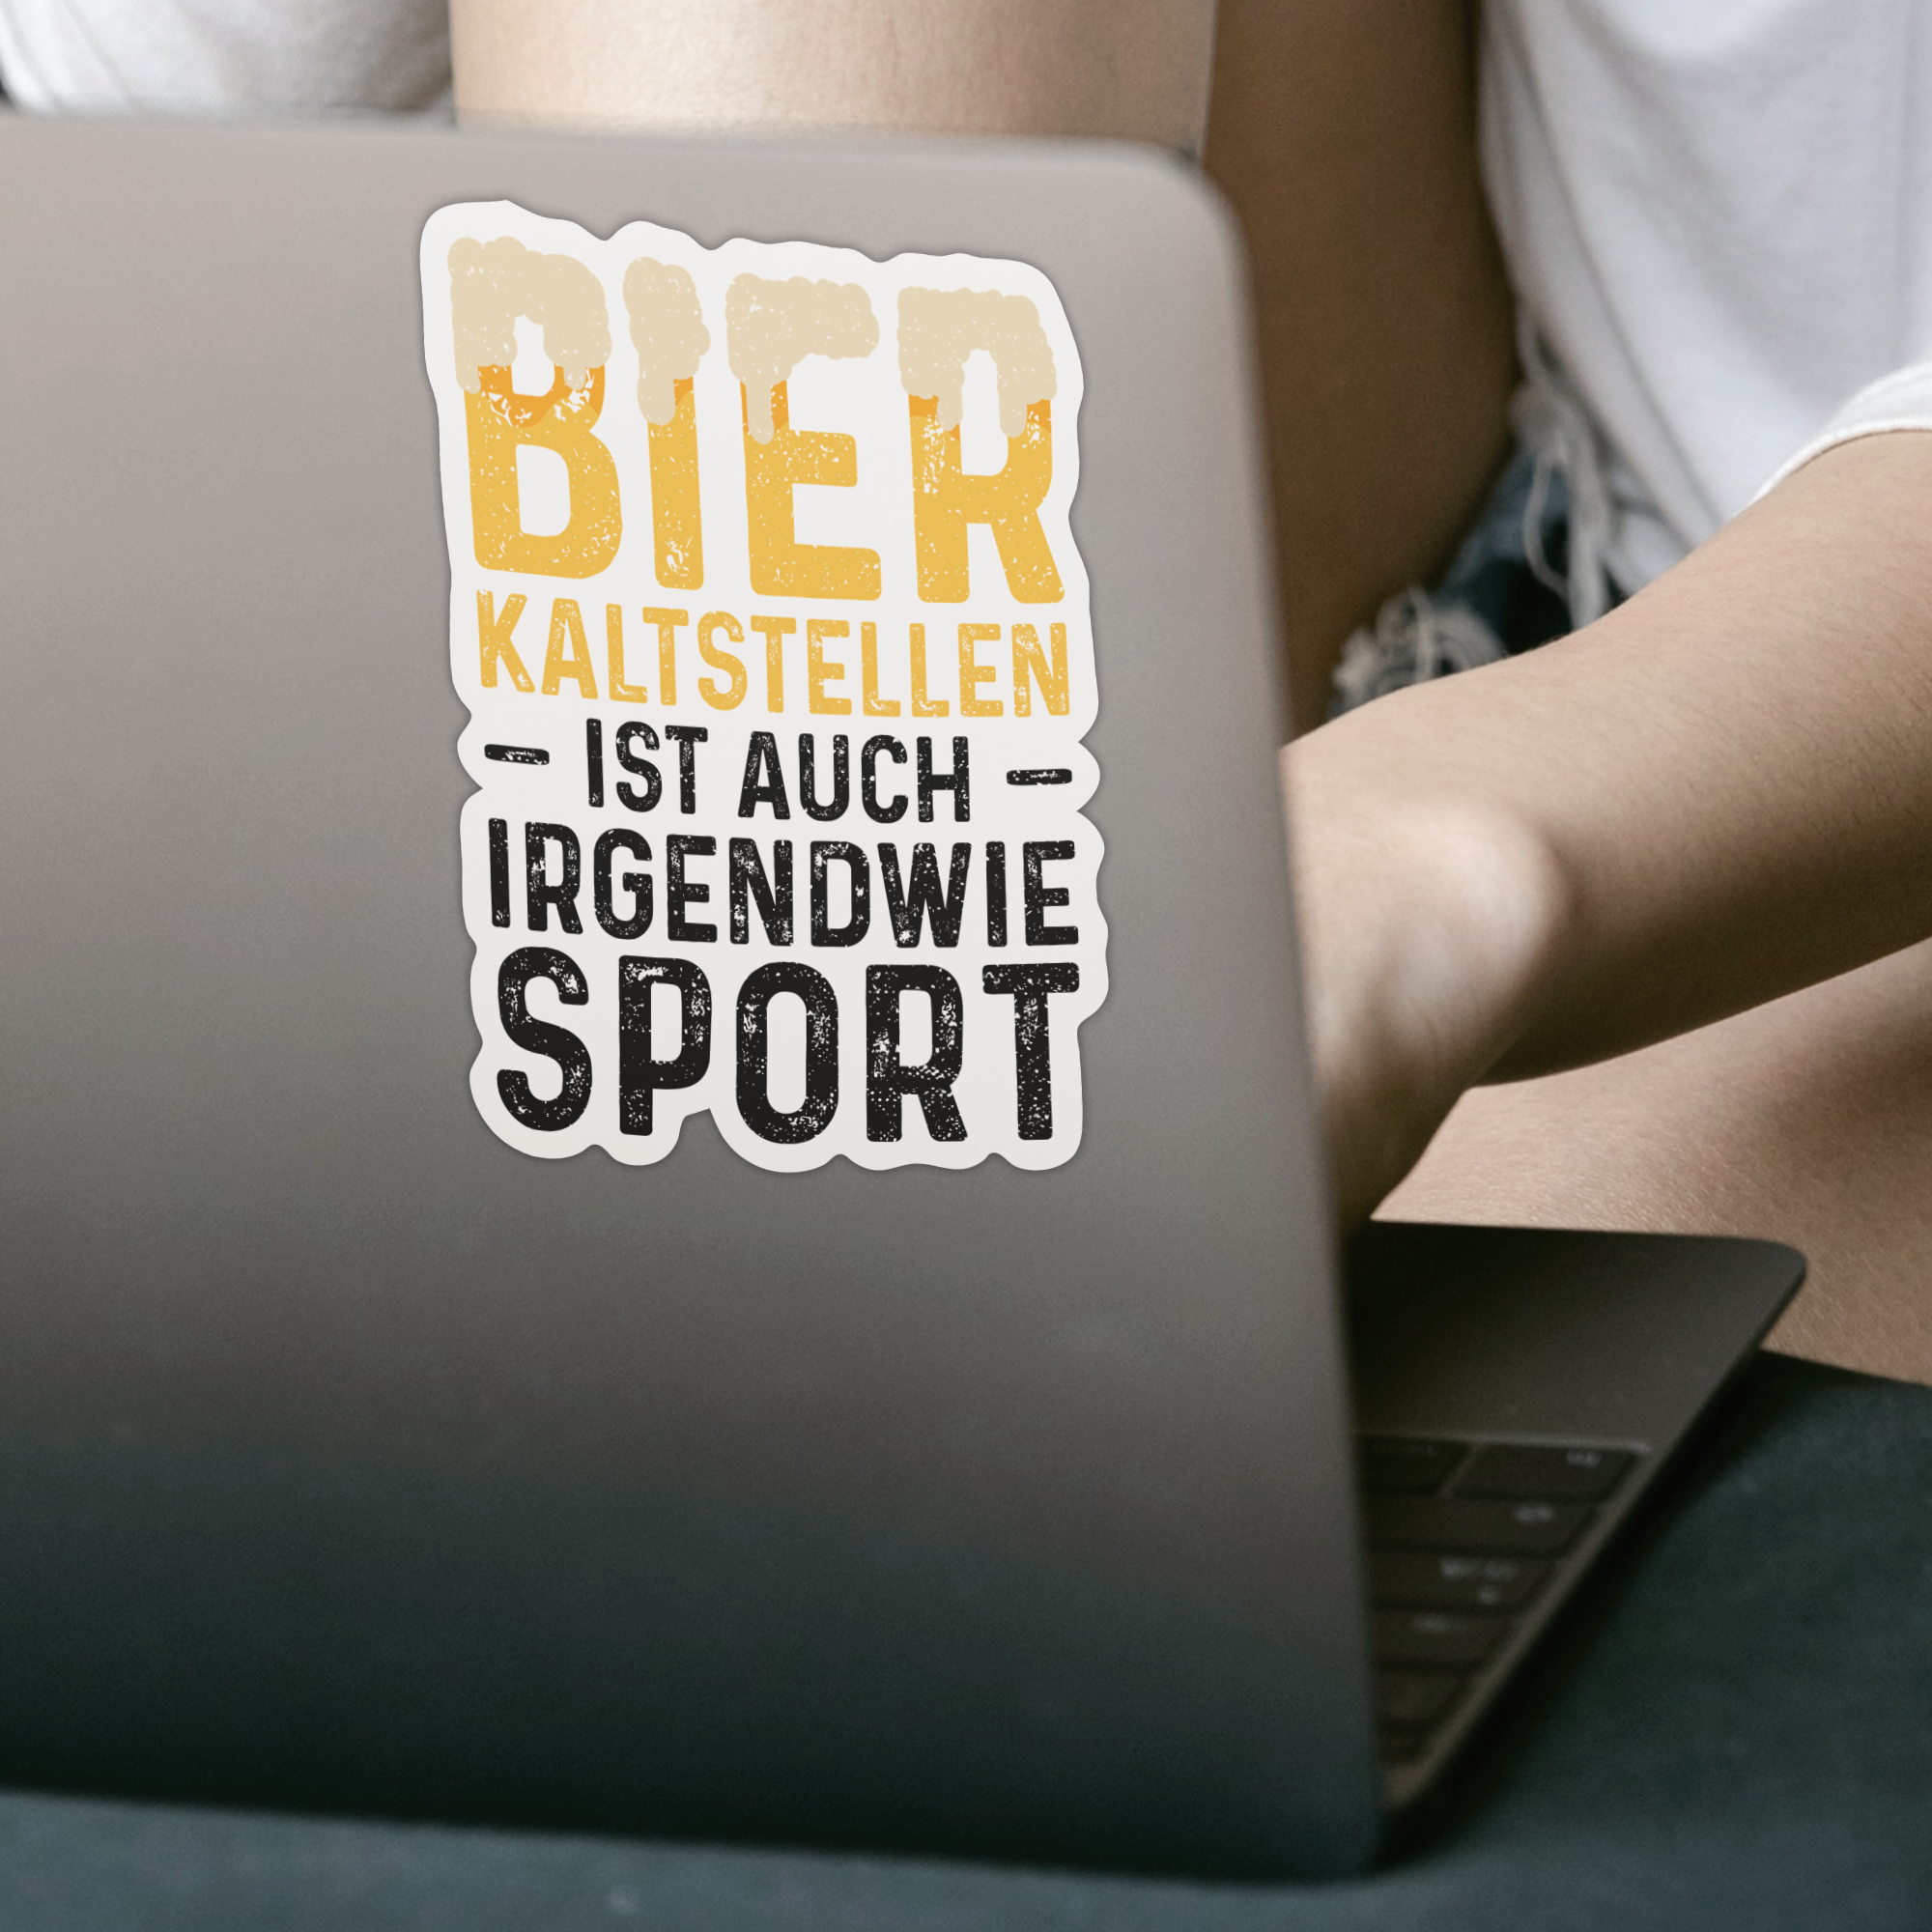 Bier Kaltstellen Ist Auch Irgendwie Sport Sticker - DESIGNSBYJNK5.COM